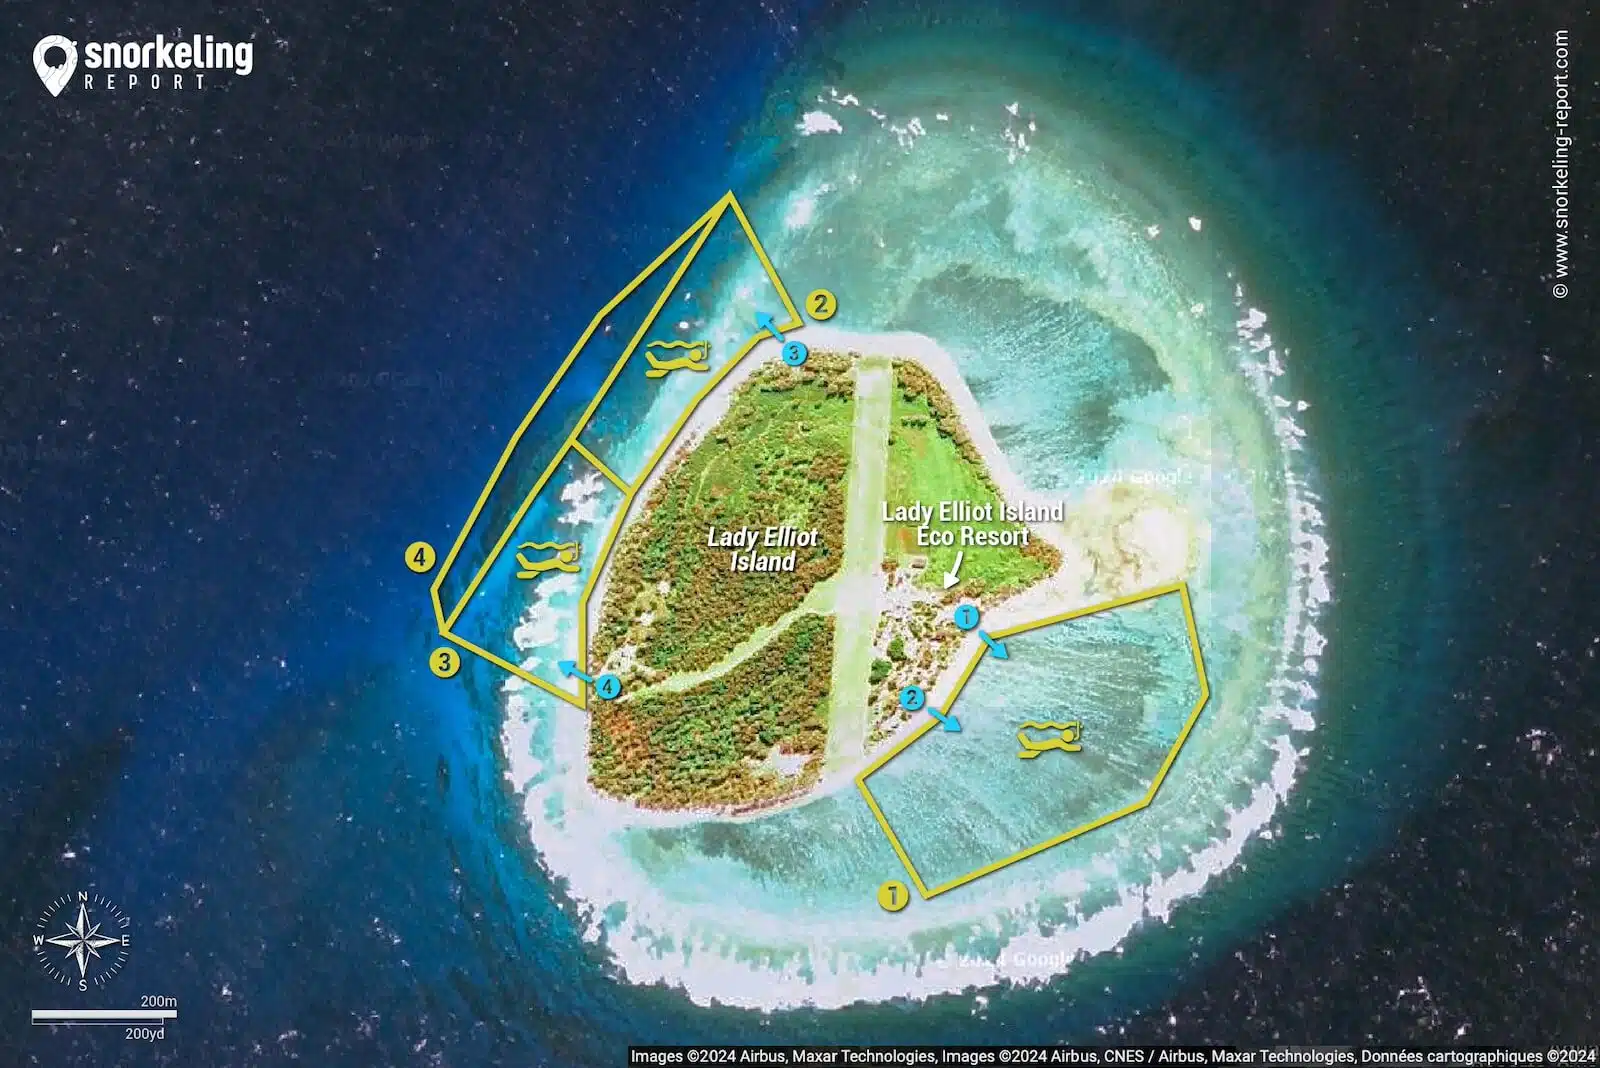 Lady Elliot Island snorkeling map, Great Barrier Reef